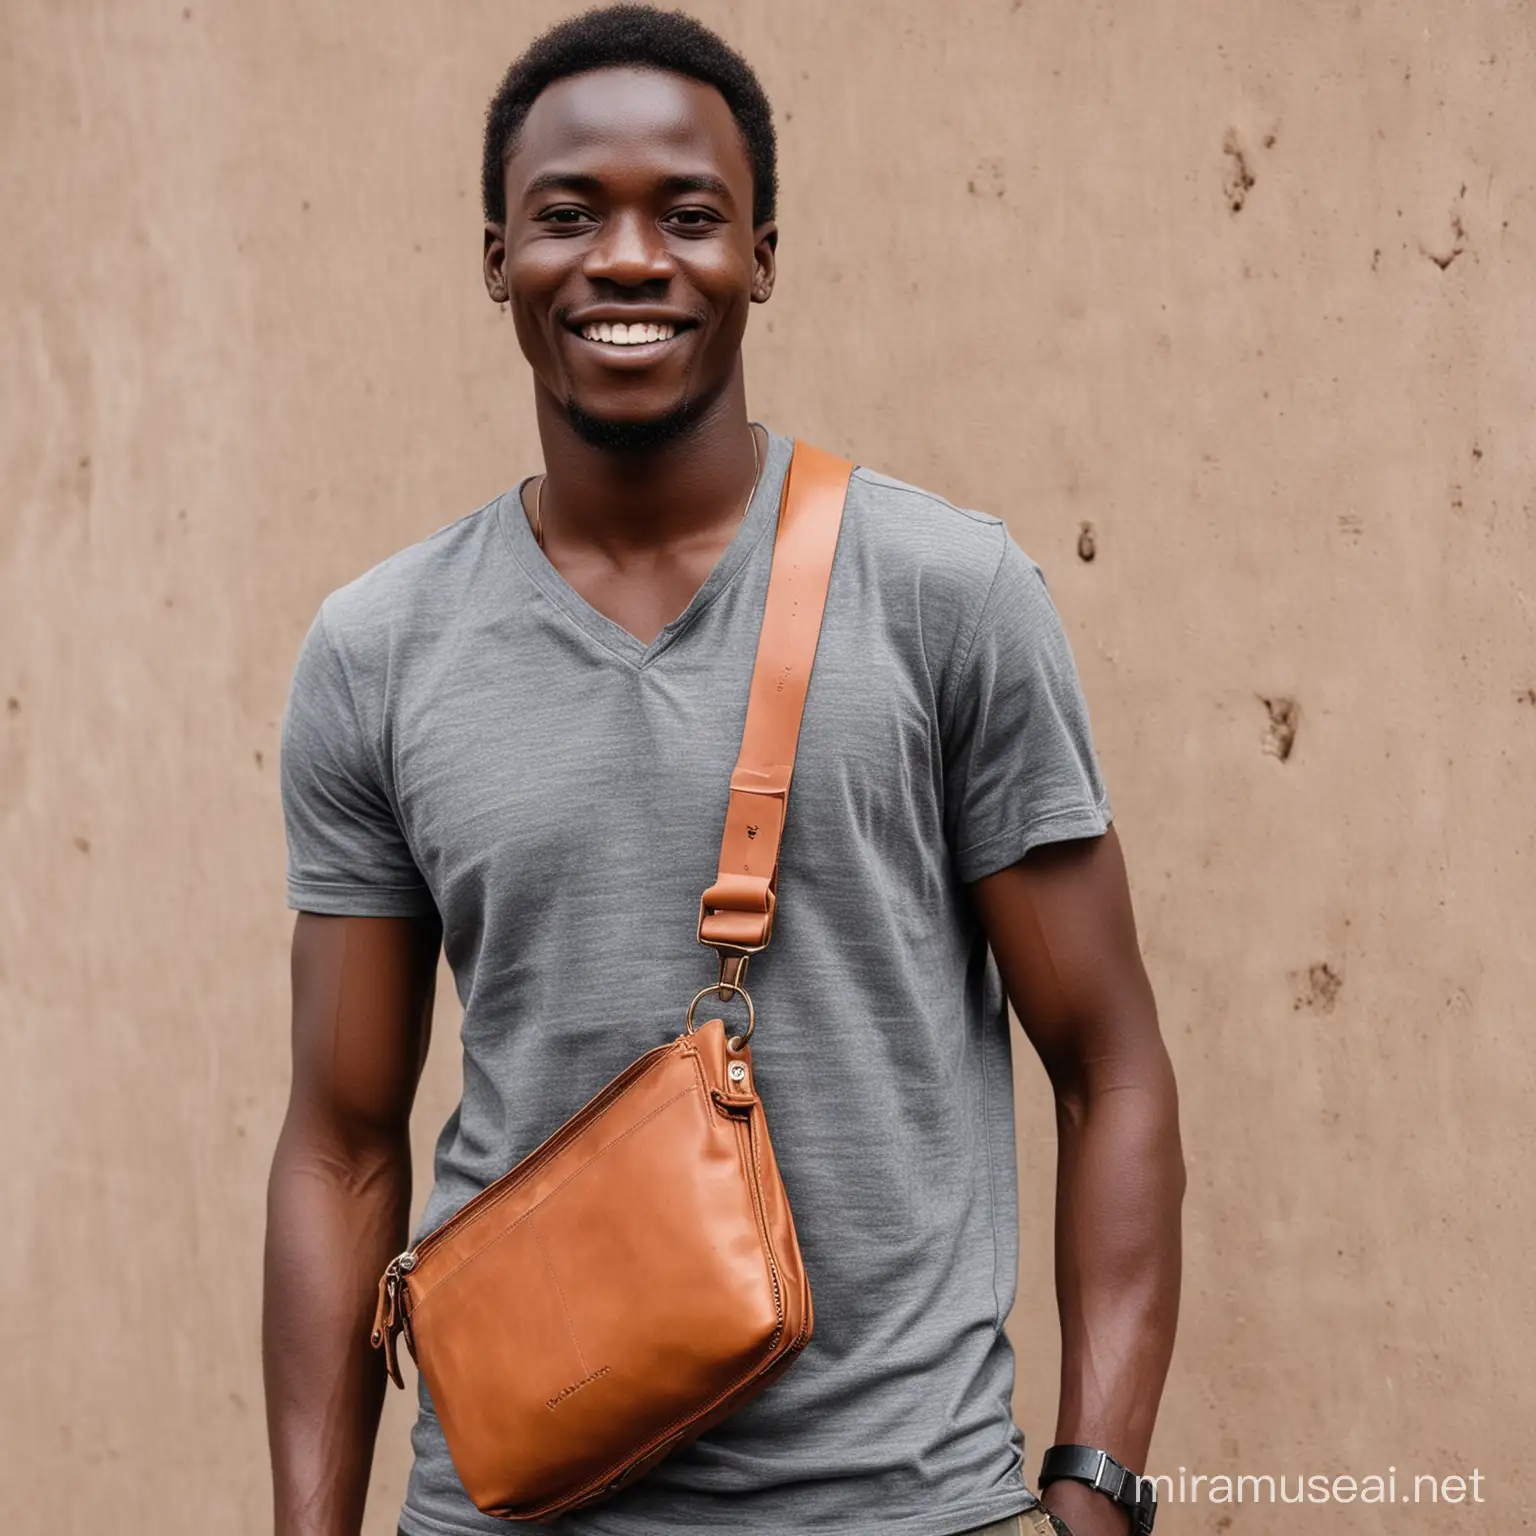 Kenyan Man Carrying Leather Sling Bag in Urban Setting